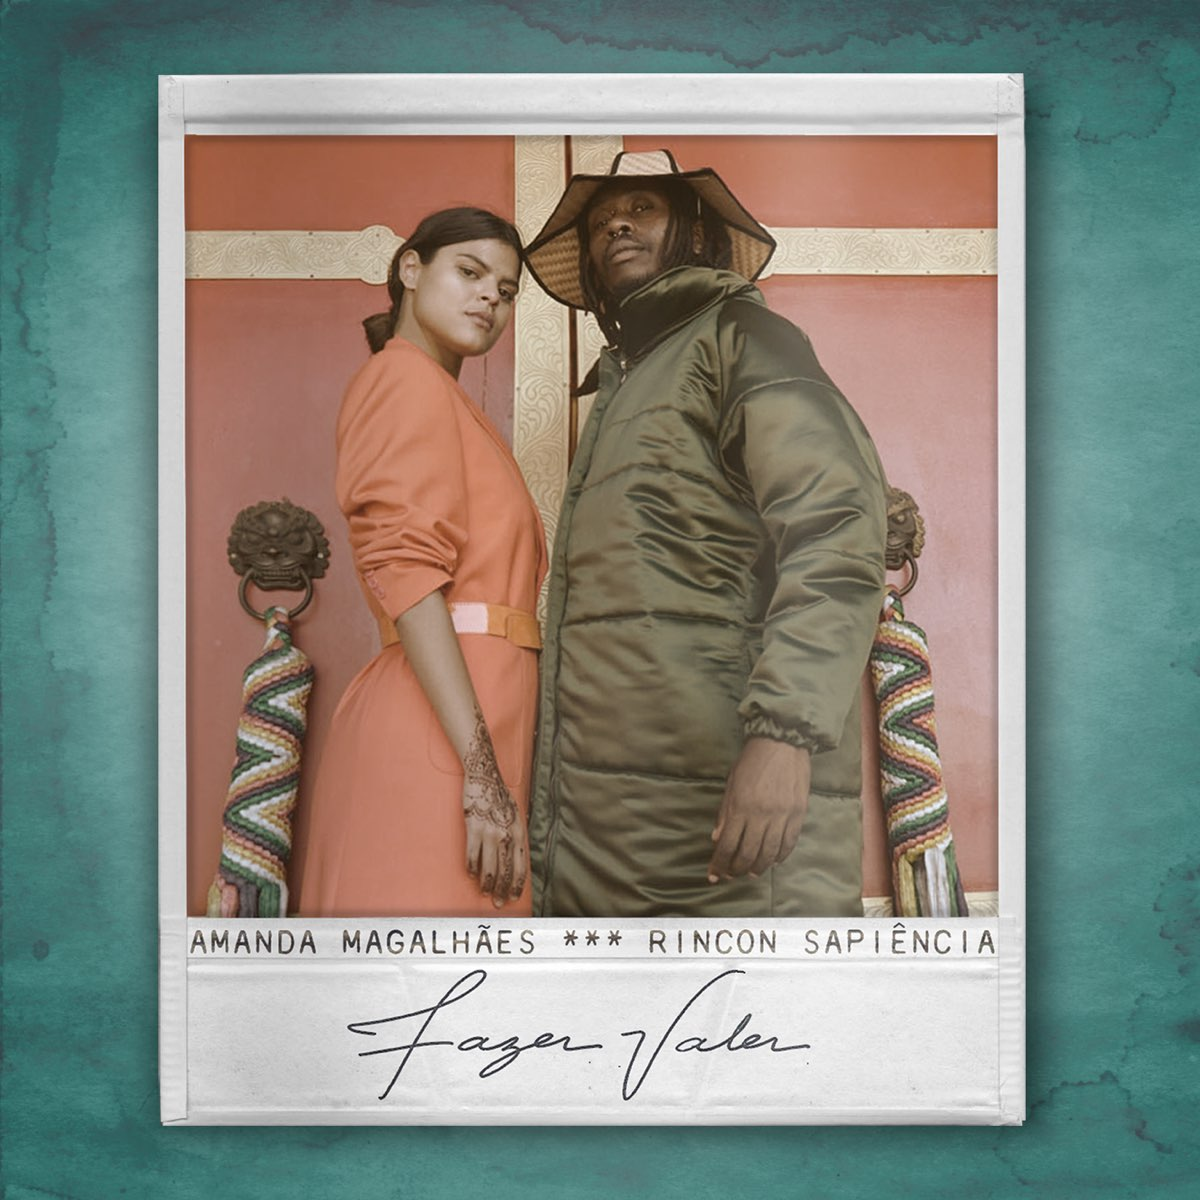 Amanda Magalhães featuring Rincon Sapiência — Fazer Valer cover artwork